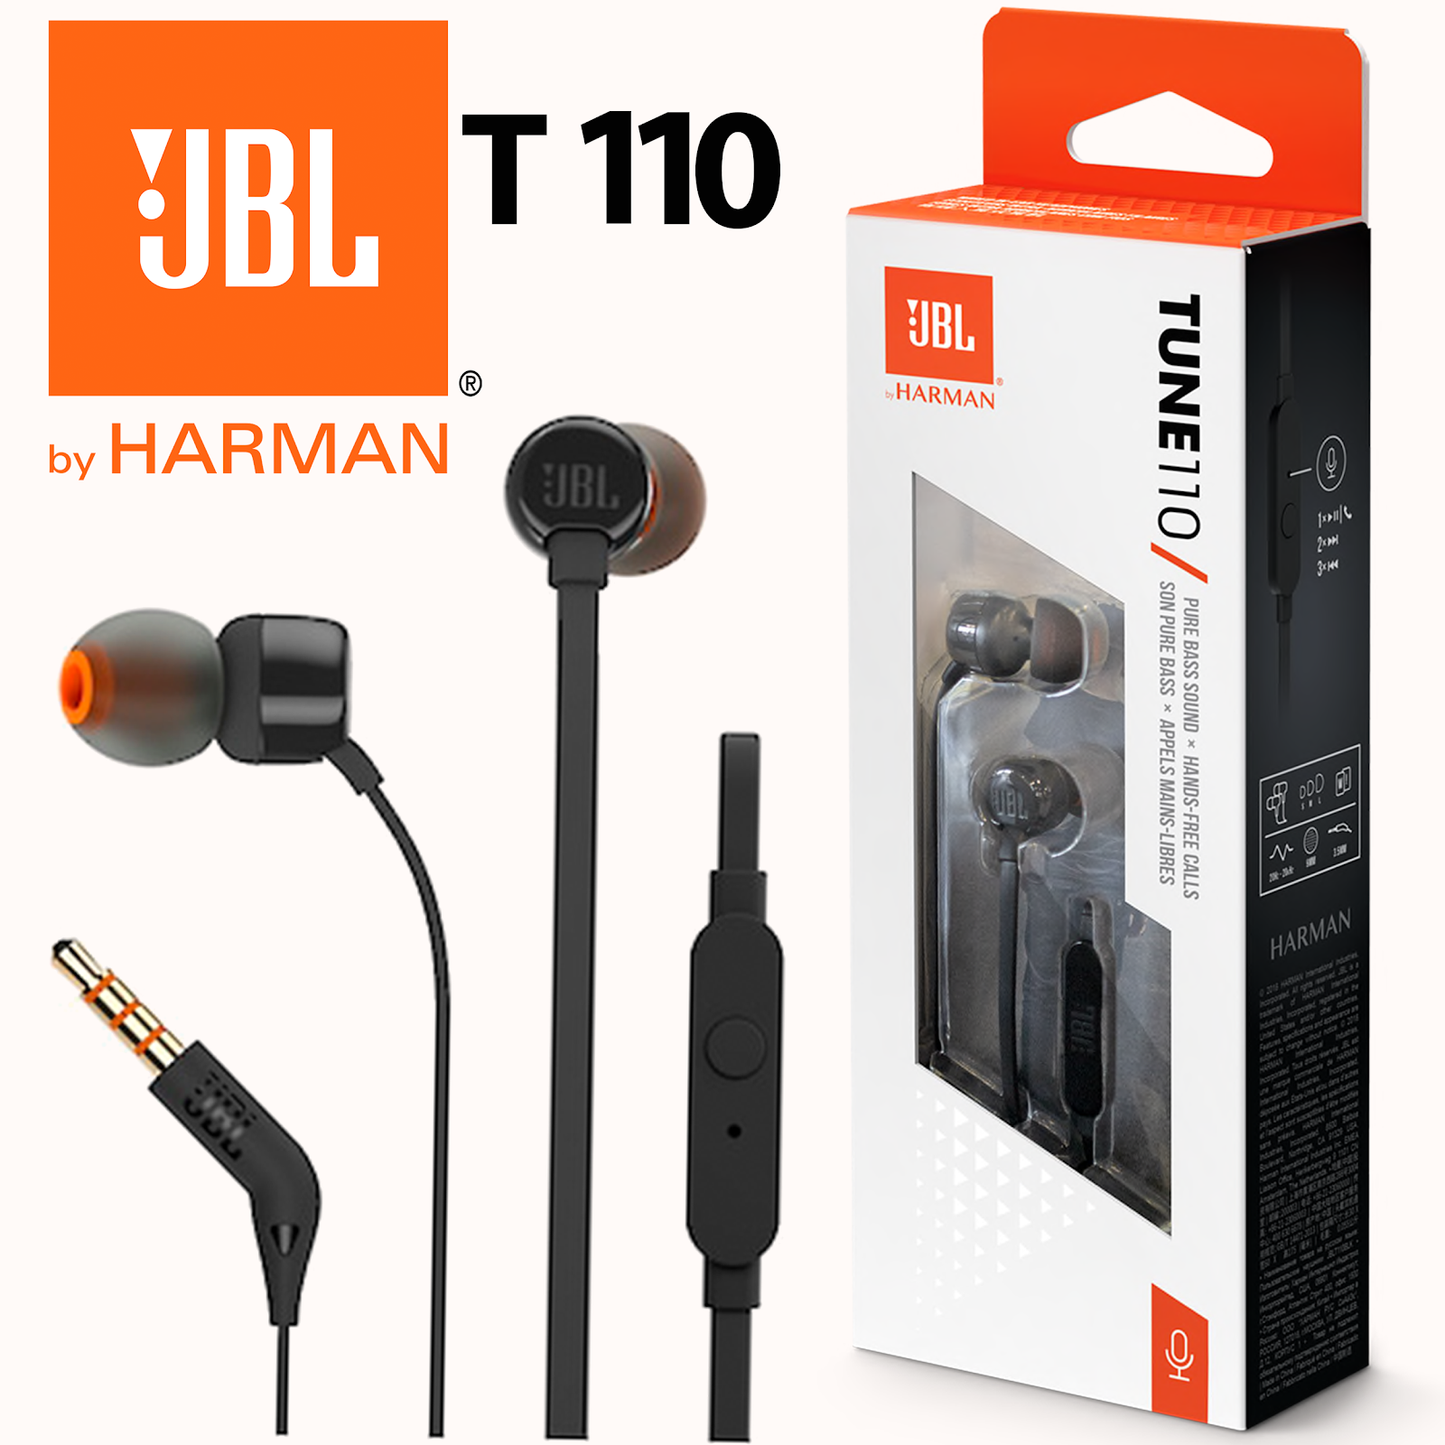 JBL T110 Bluetooth WIRELESS IN-EAR HEADPHONES - Black